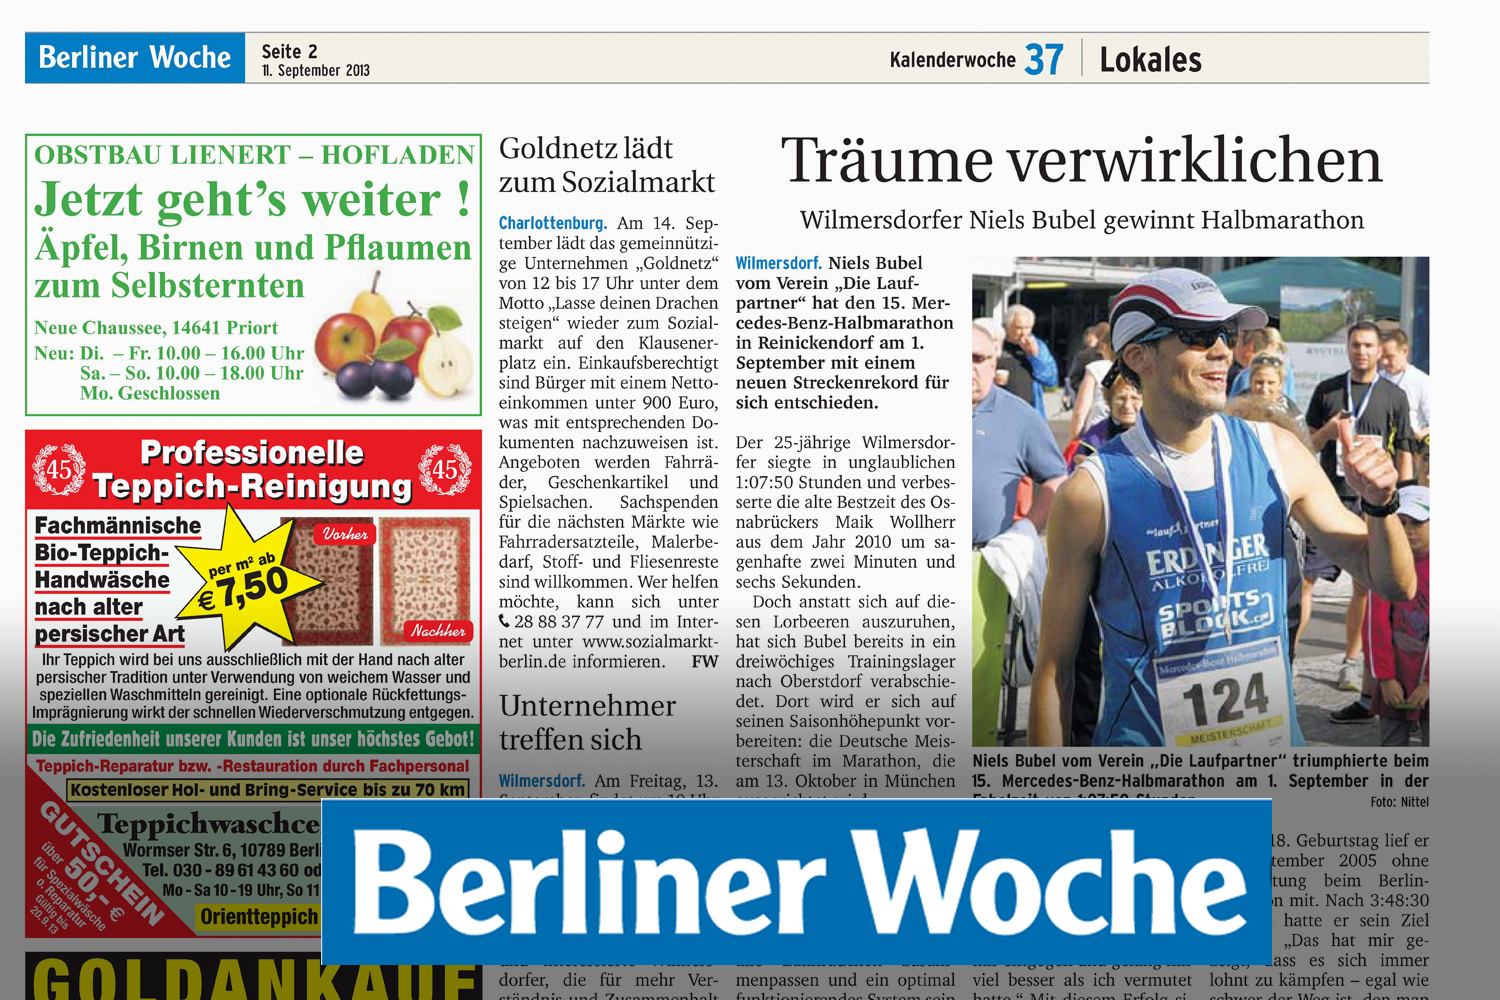 Berliner Woche - Niels Bubel - Zum Sieg geflogen - BBM Halbmarathon 2013 - Mercedes Benz Halbmarathon